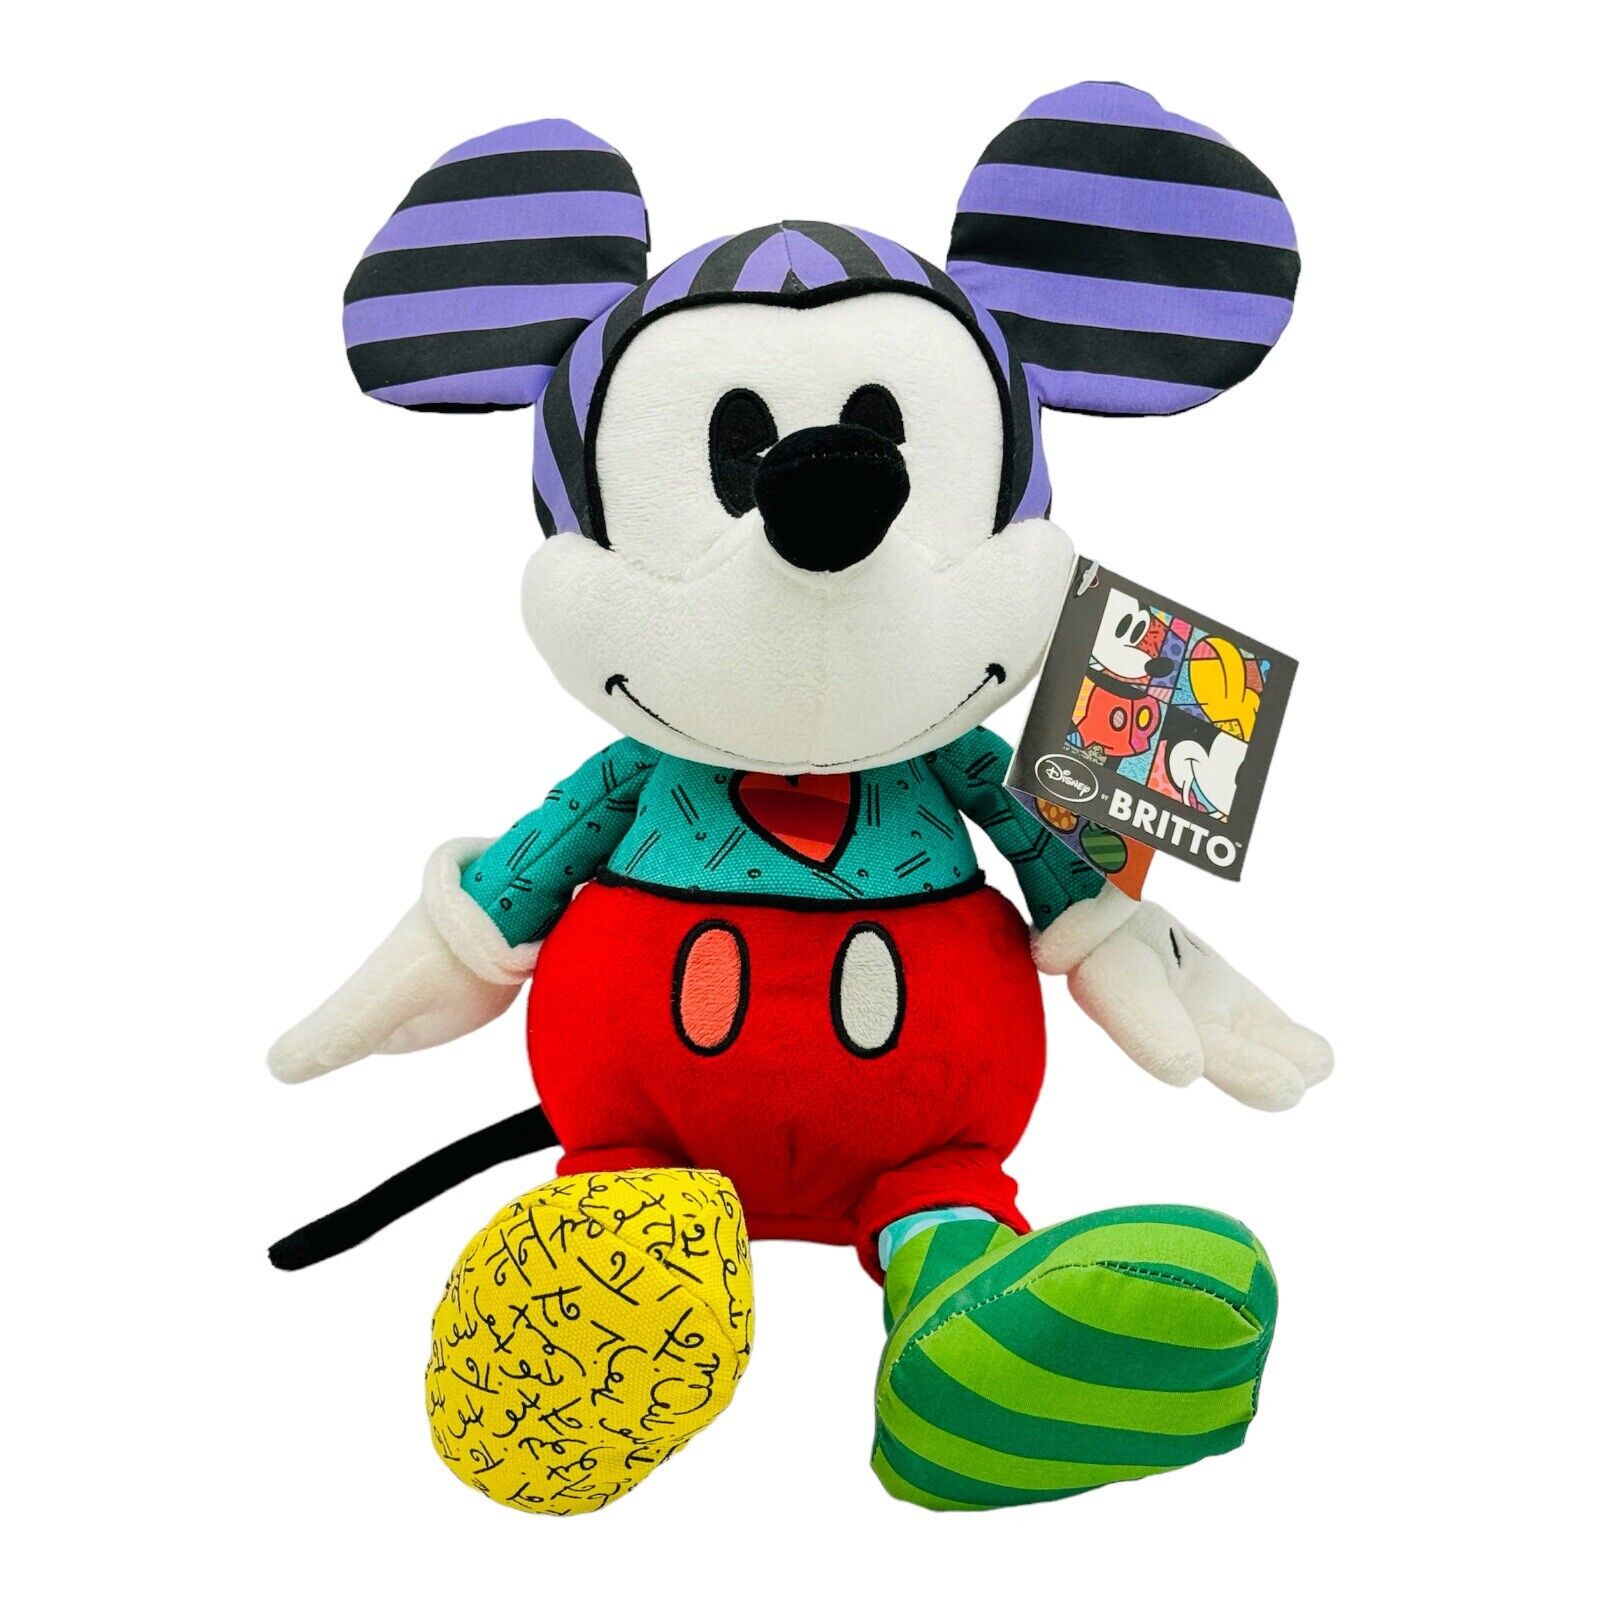 Disney Romero Britto Multi Color Patch Mickey Mouse Enesco Plush 14” Tall